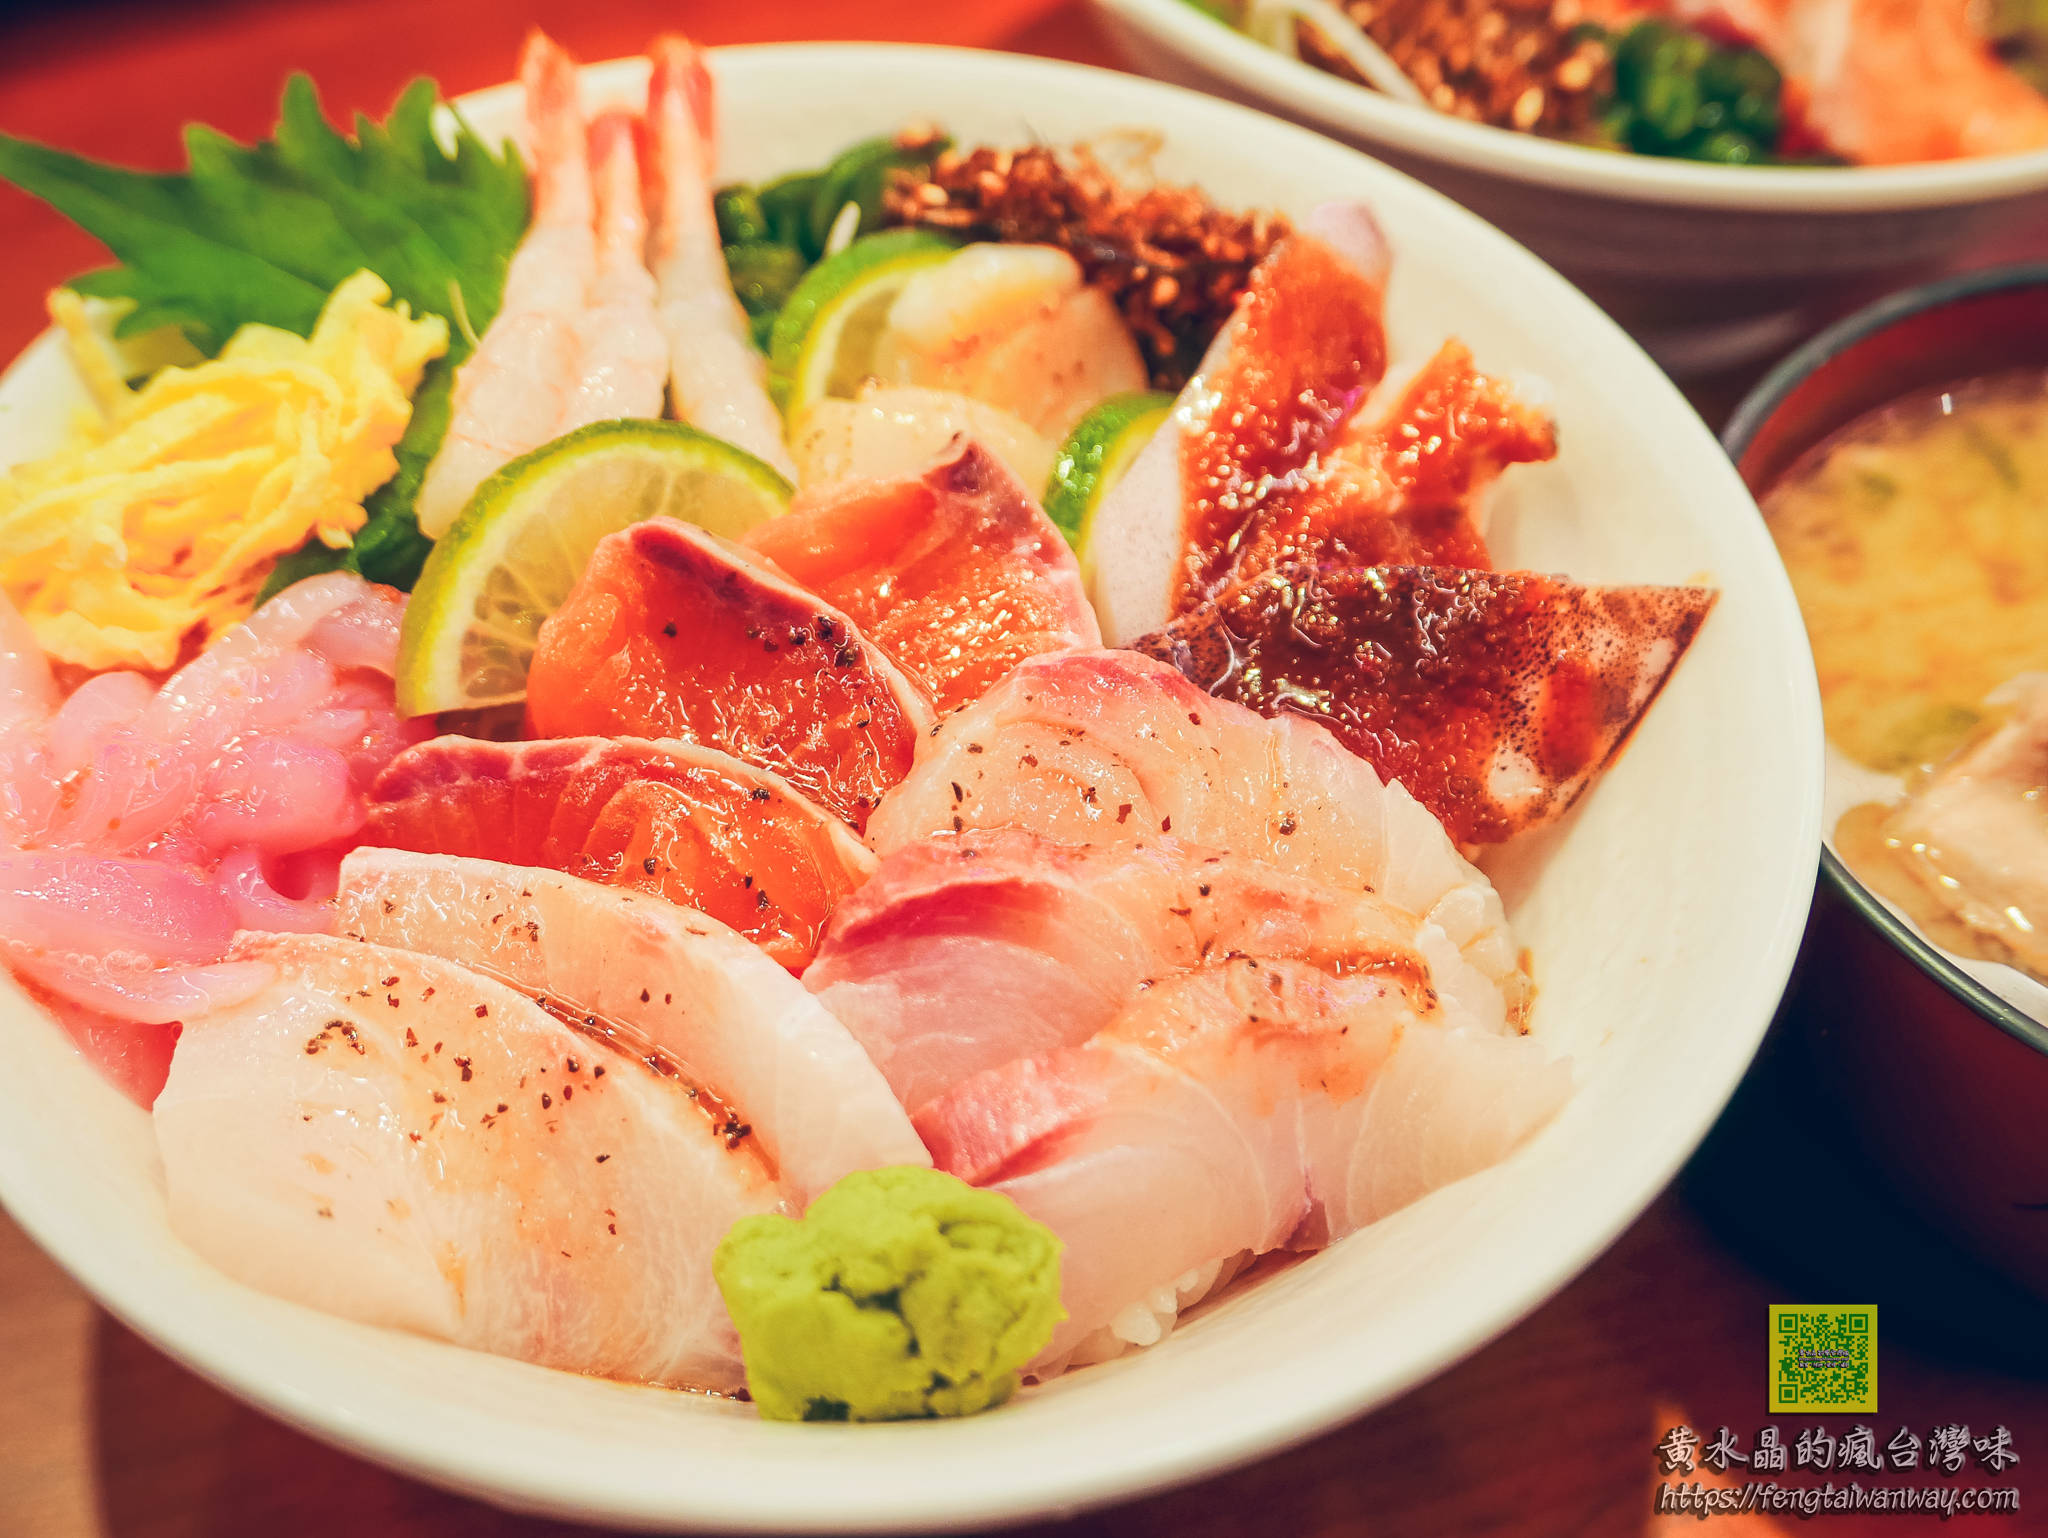 紅飛刀日式料理【桃園美食】|老店新開日本料理；老饕期盼已久終於悄悄開幕